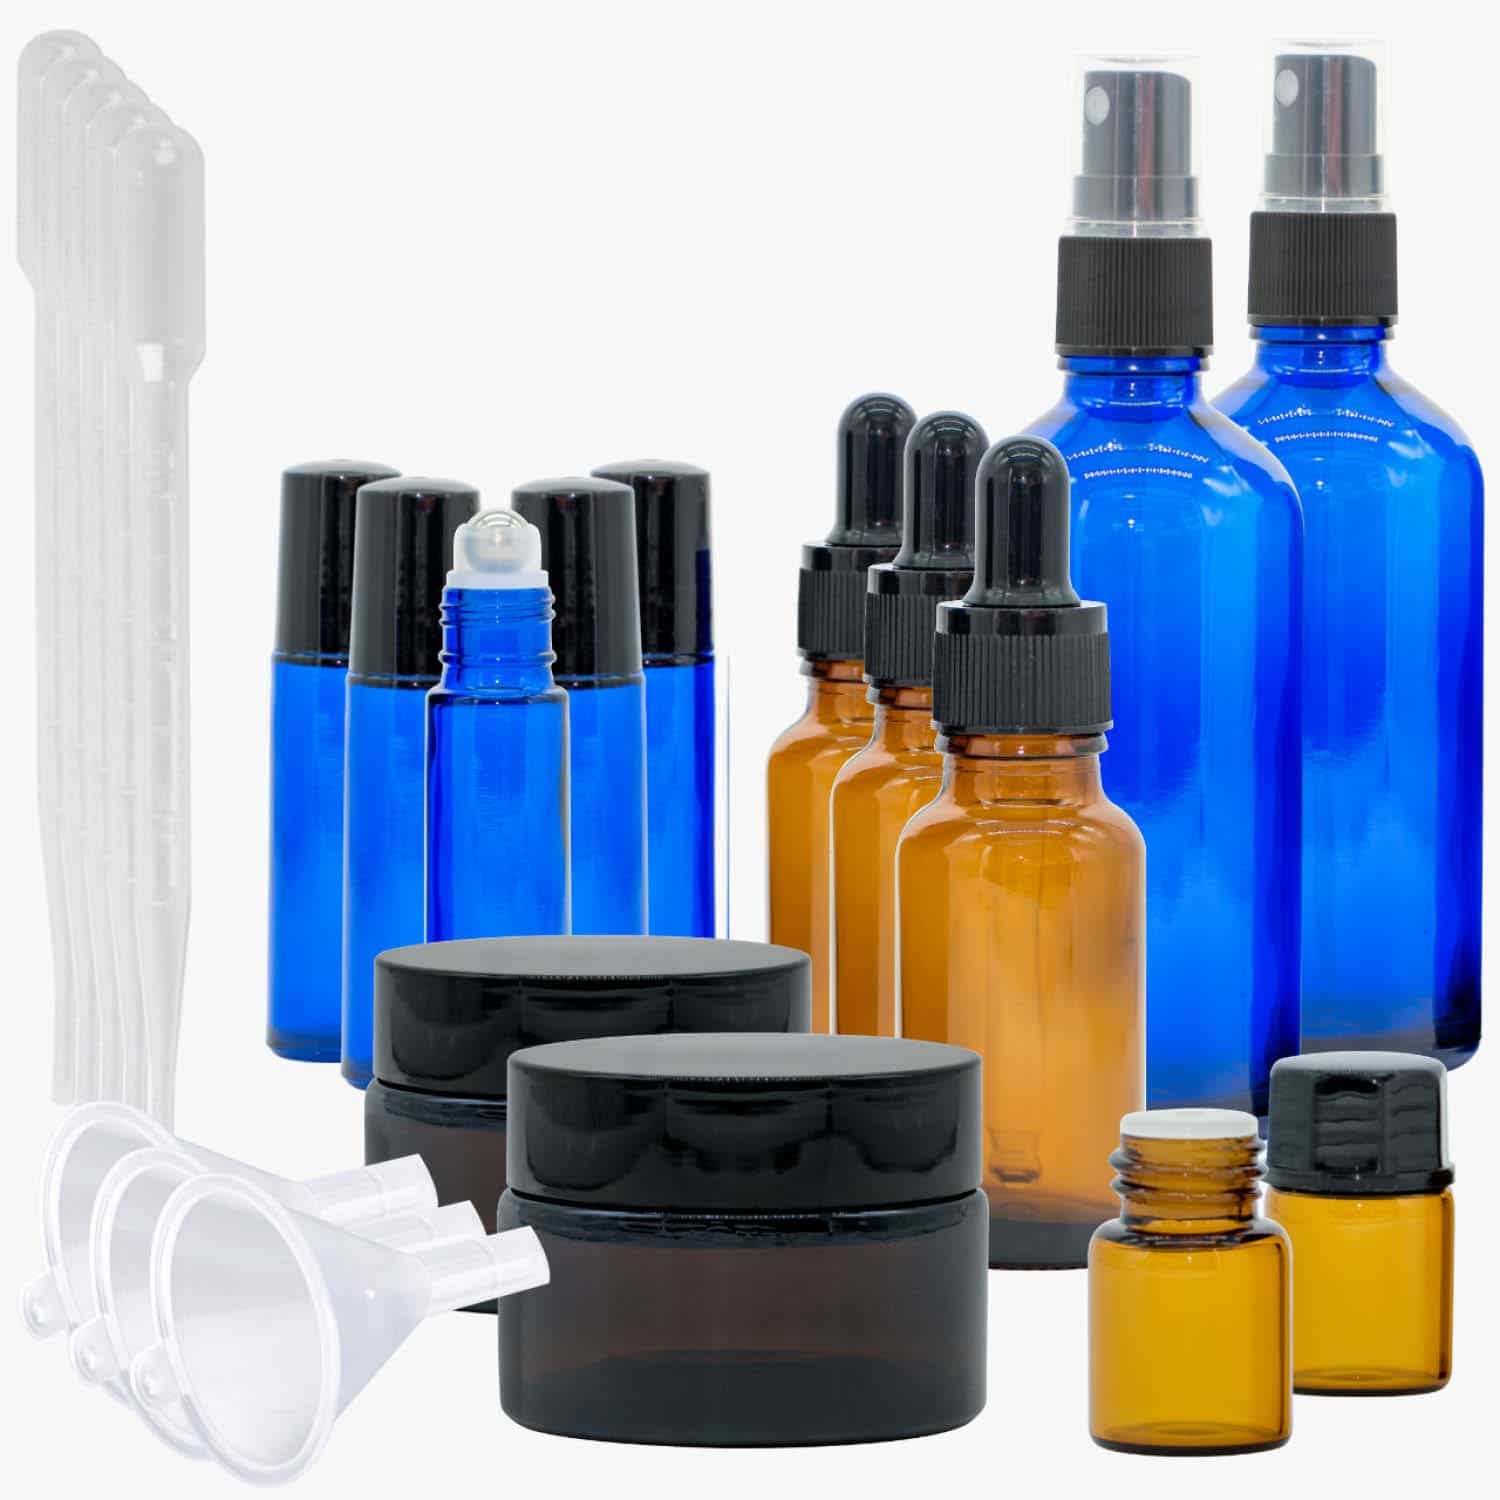 https://casida.com/wp-content/uploads/2021/05/Casida-Aromatherapie-Profi-Set-A2058242-Roll-On-Spruehflasche-10-ml-20-ml-100-ml-Tiegel-Tropfflasche-aetherische-Oele-Braunglas-Blauglas.jpg